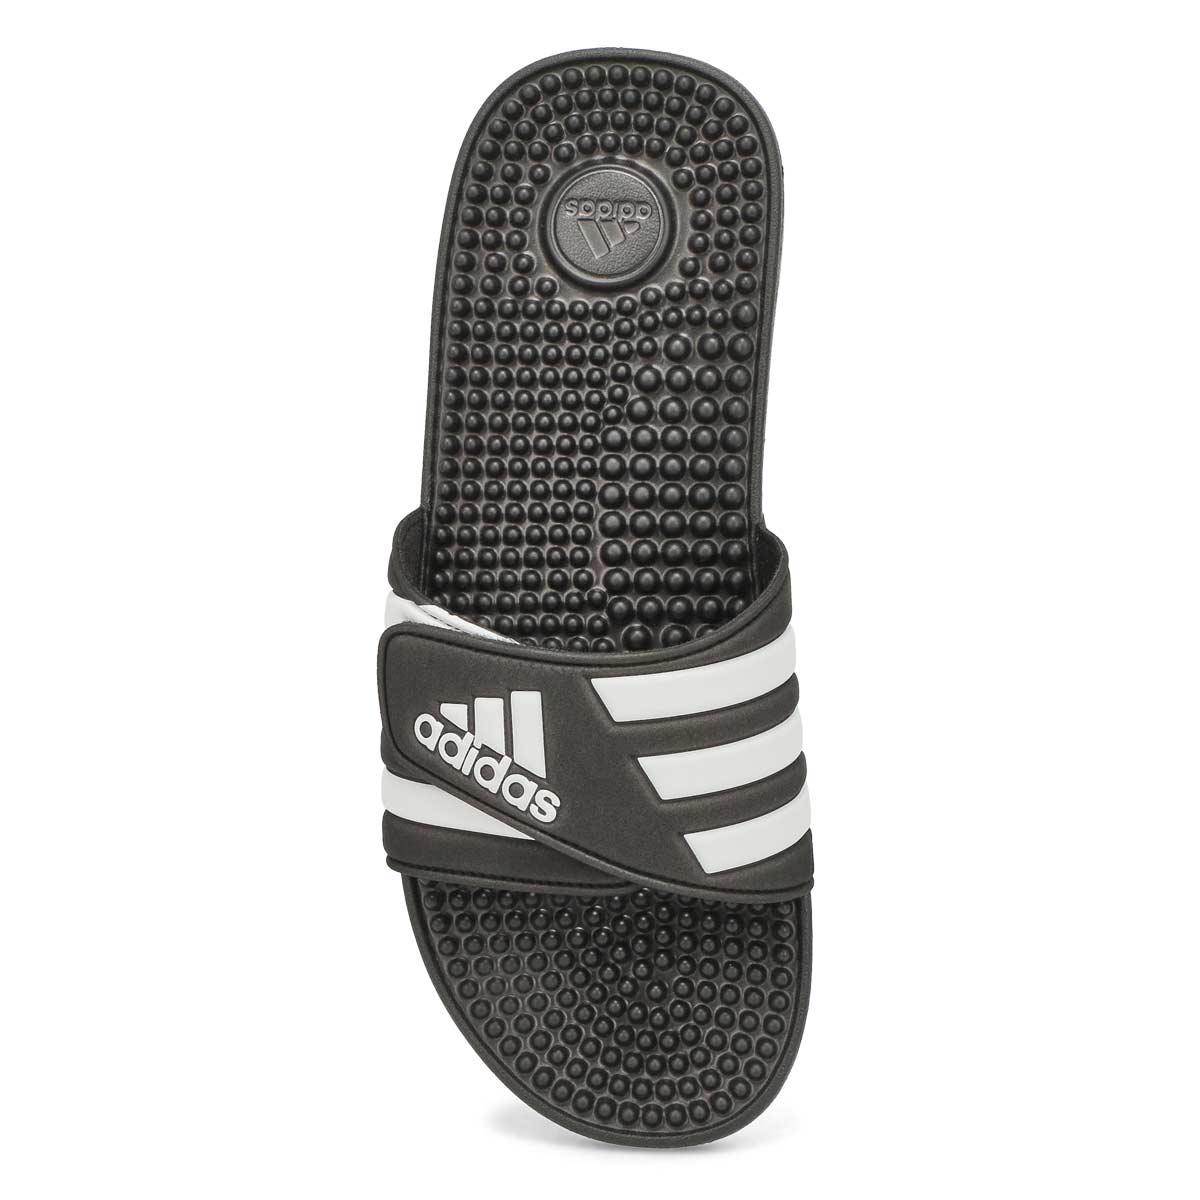 Men's Adissage Slide Sandal - Black/White